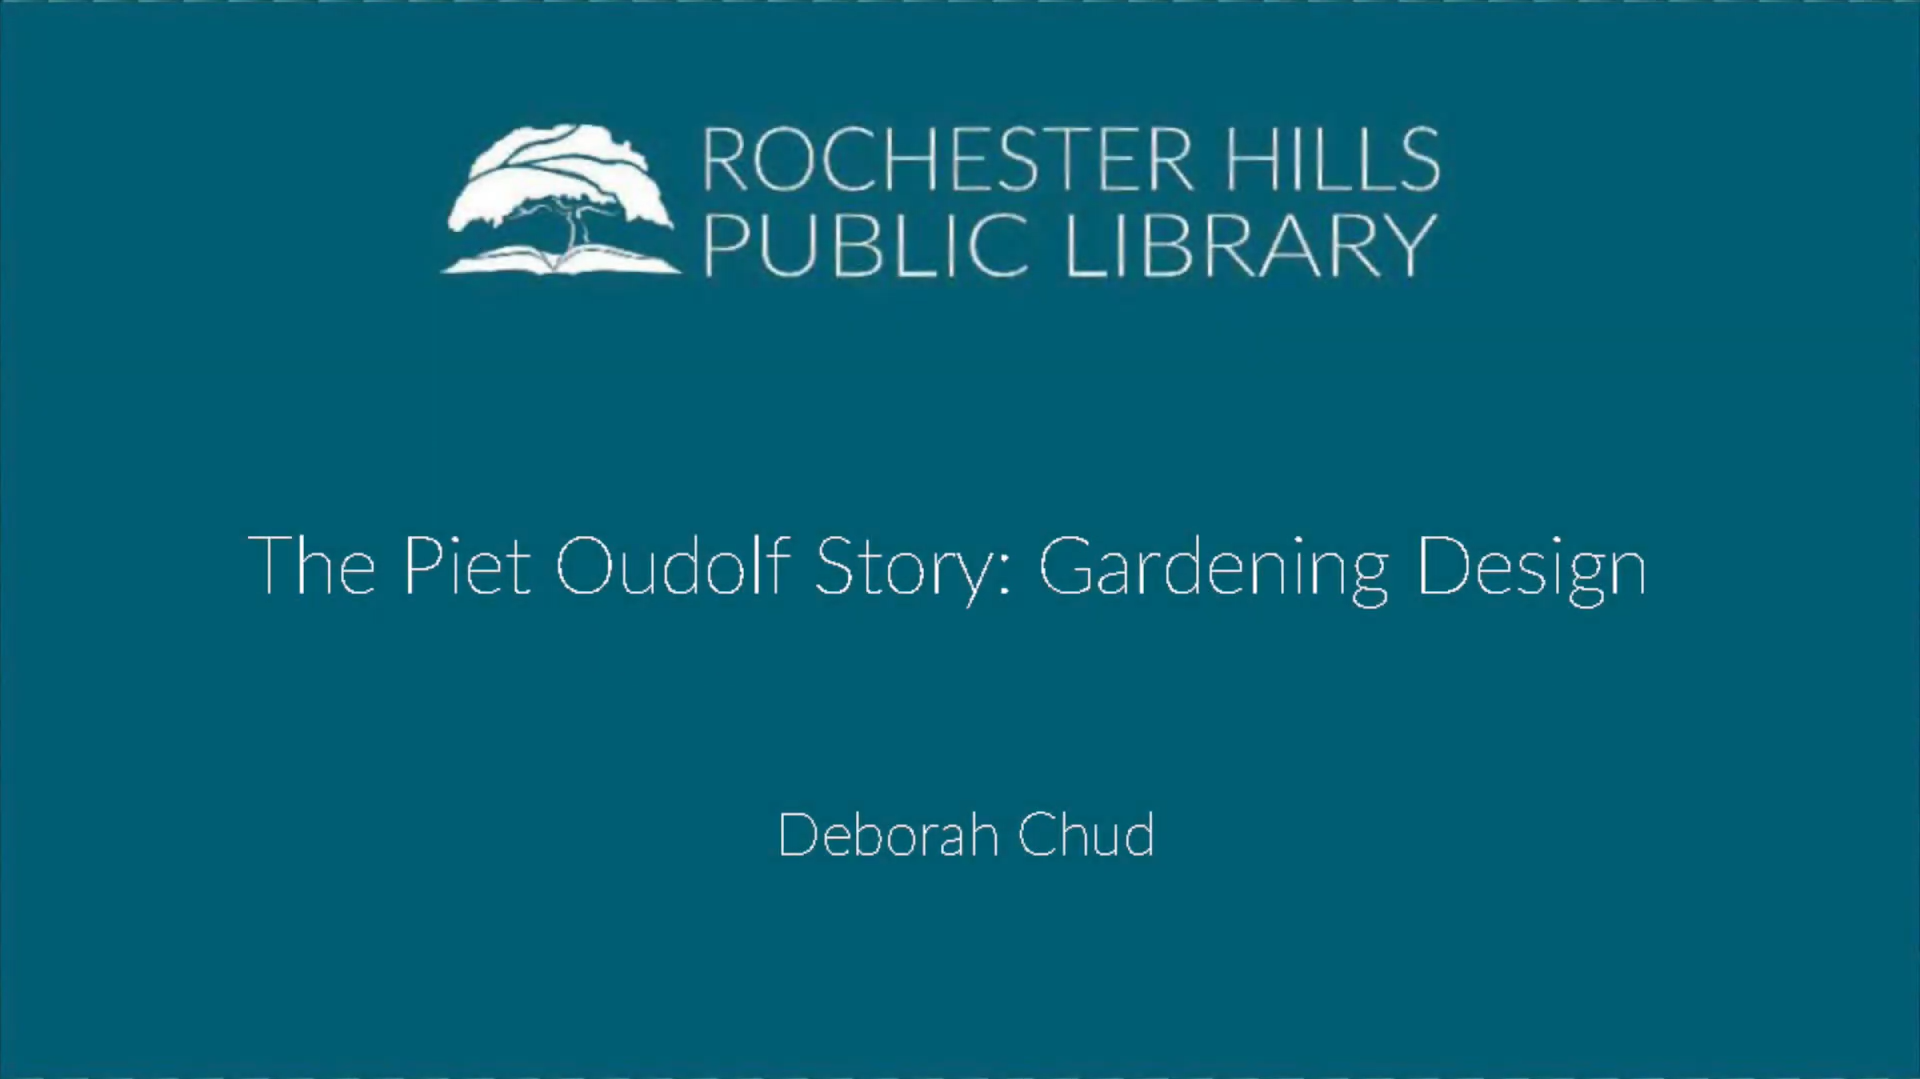 The Piet Oudolf Story: Gardening Design